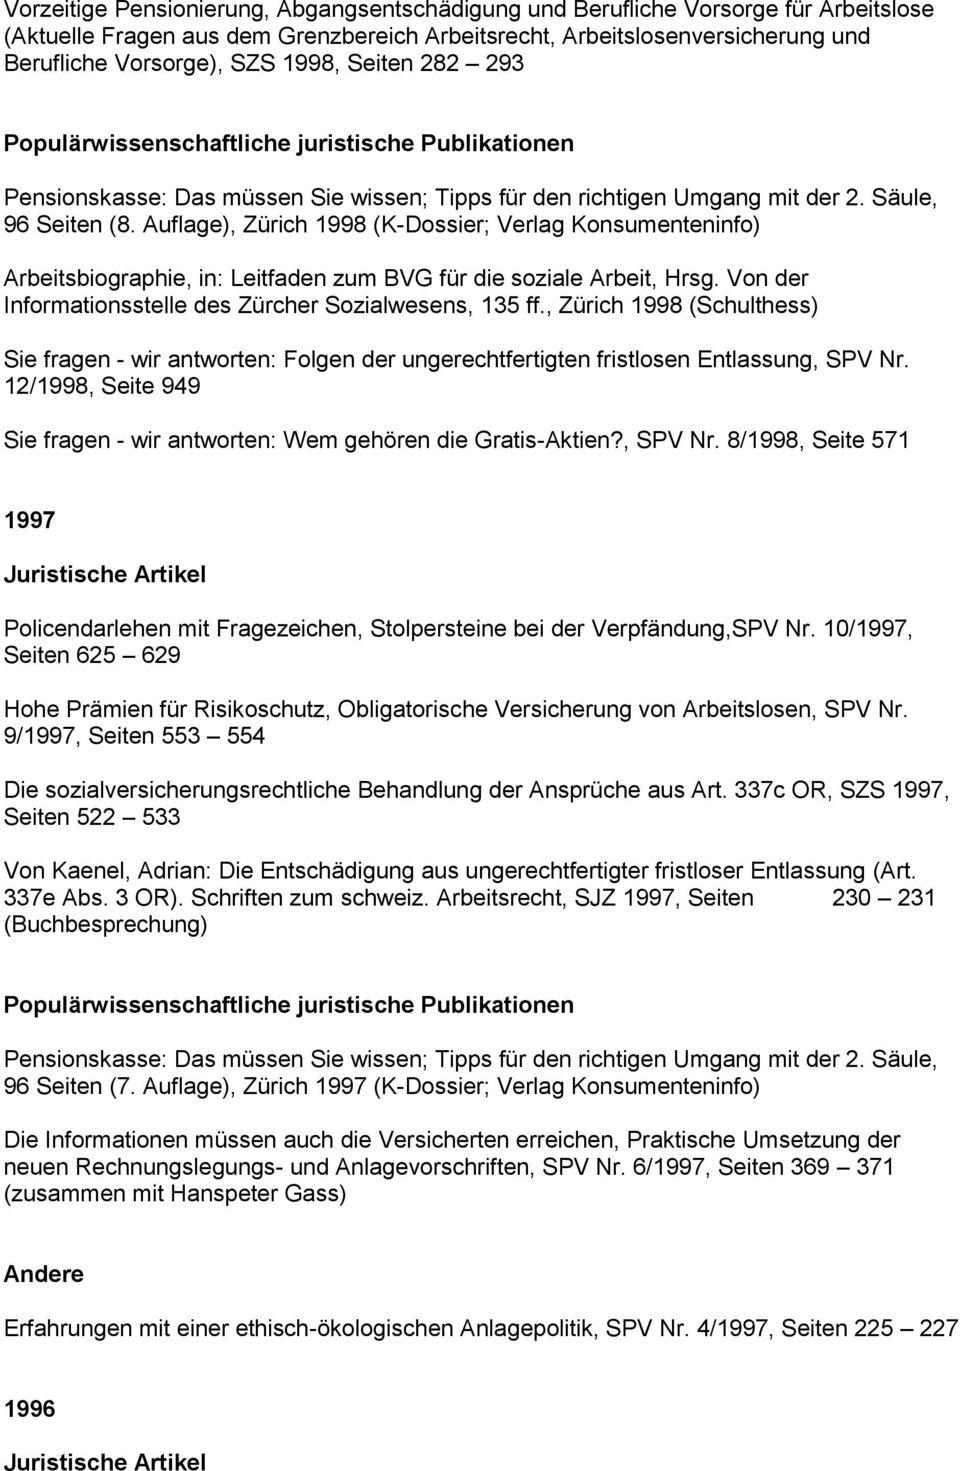 Auflage), Zürich 1998 (K-Dossier; Verlag Konsumenteninfo) Arbeitsbiographie, in: Leitfaden zum BVG für die soziale Arbeit, Hrsg. Von der Informationsstelle des Zürcher Sozialwesens, 135 ff.